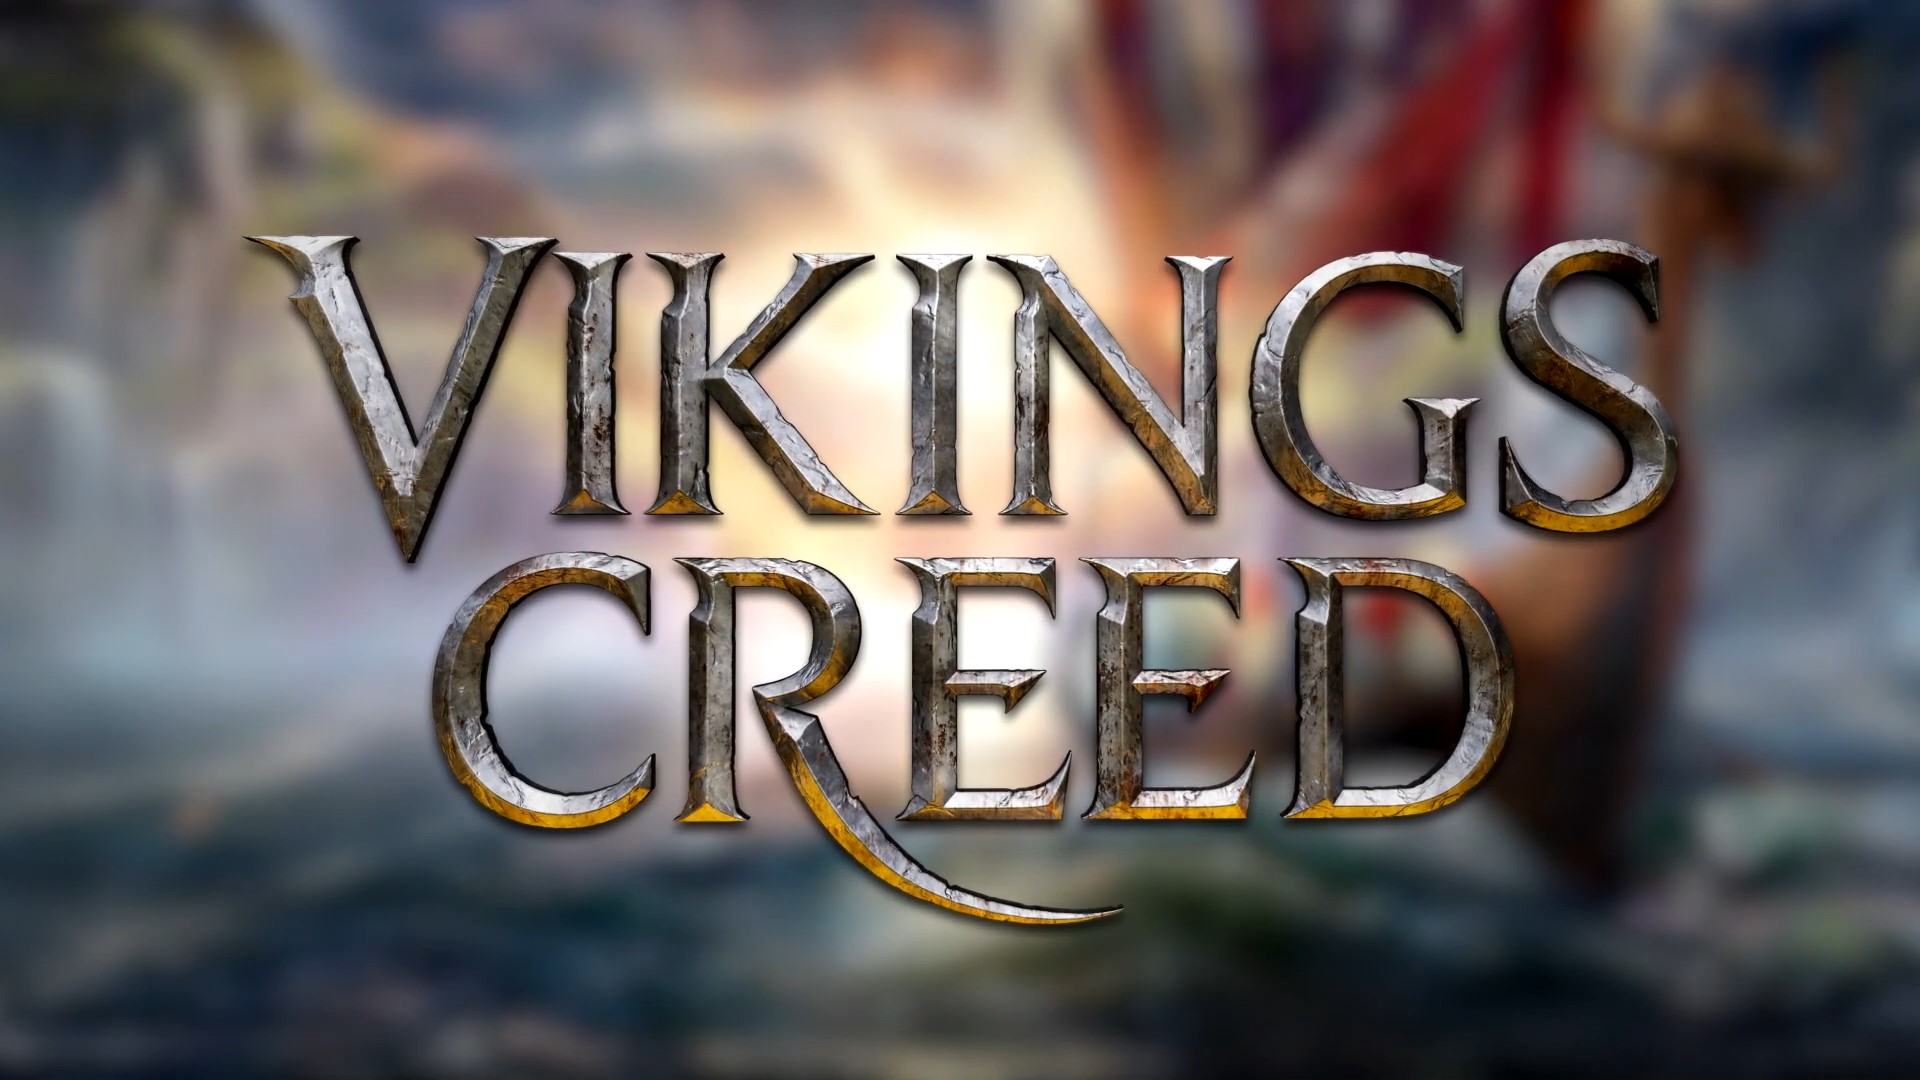 Vikings Creed Slotmill